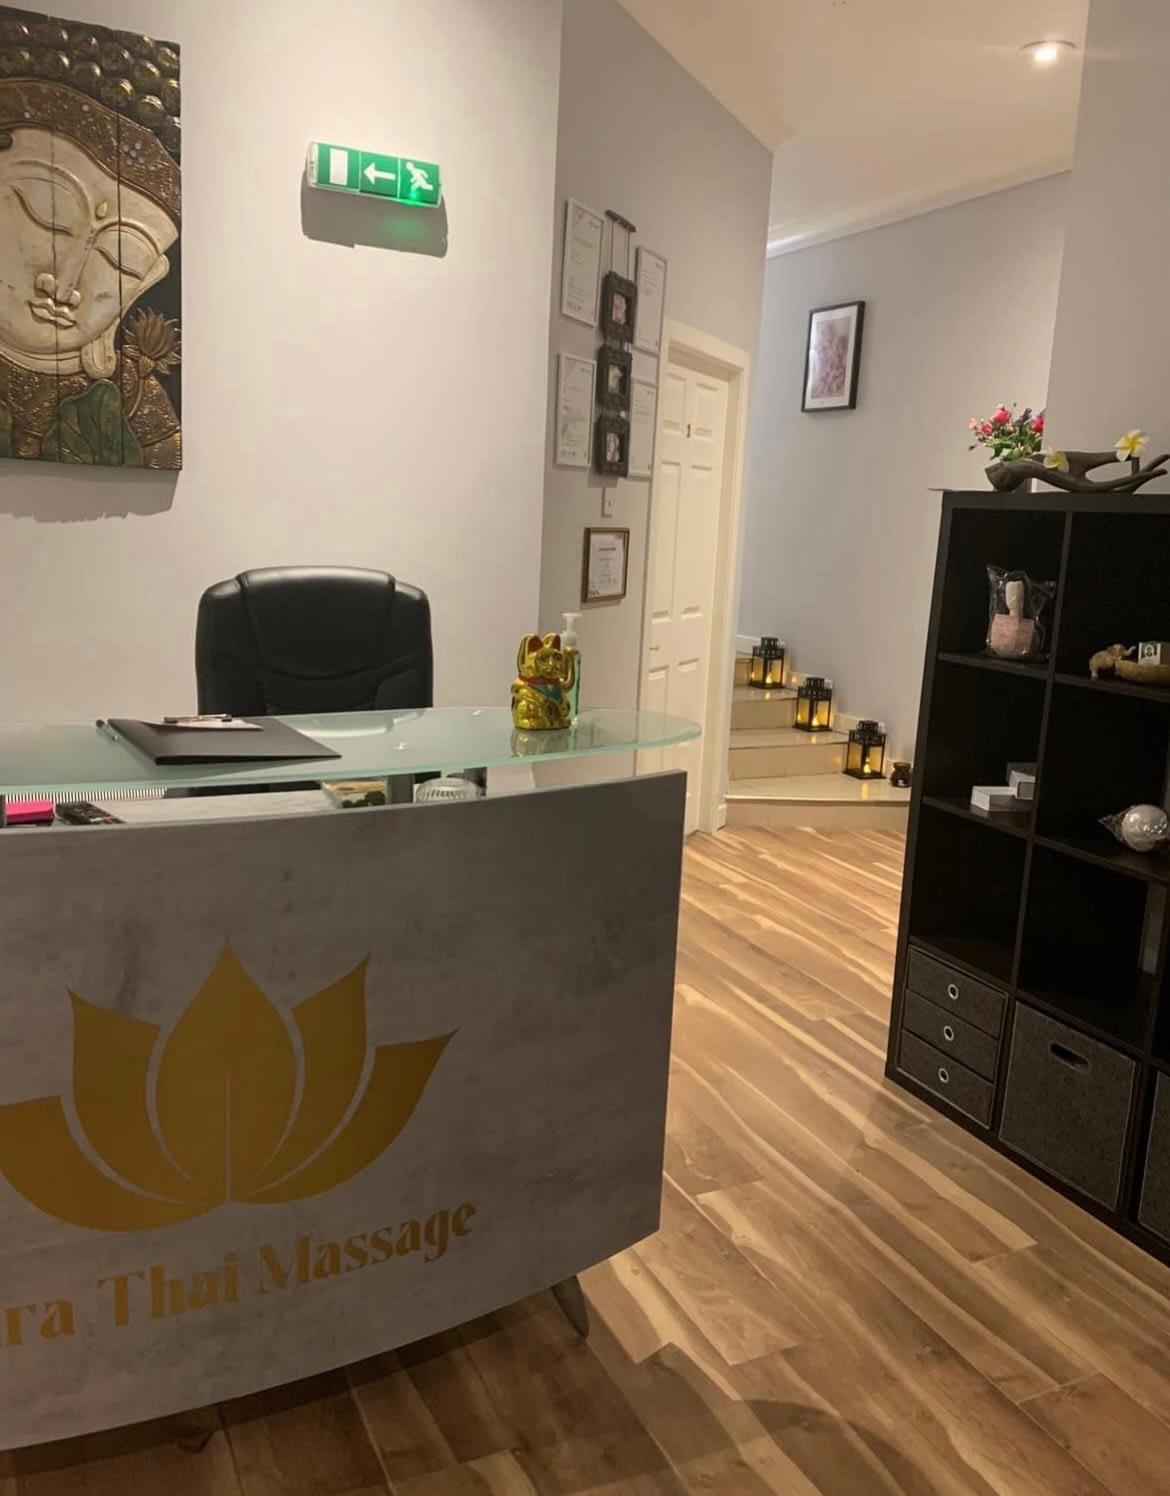 Images Dara Thai Massage